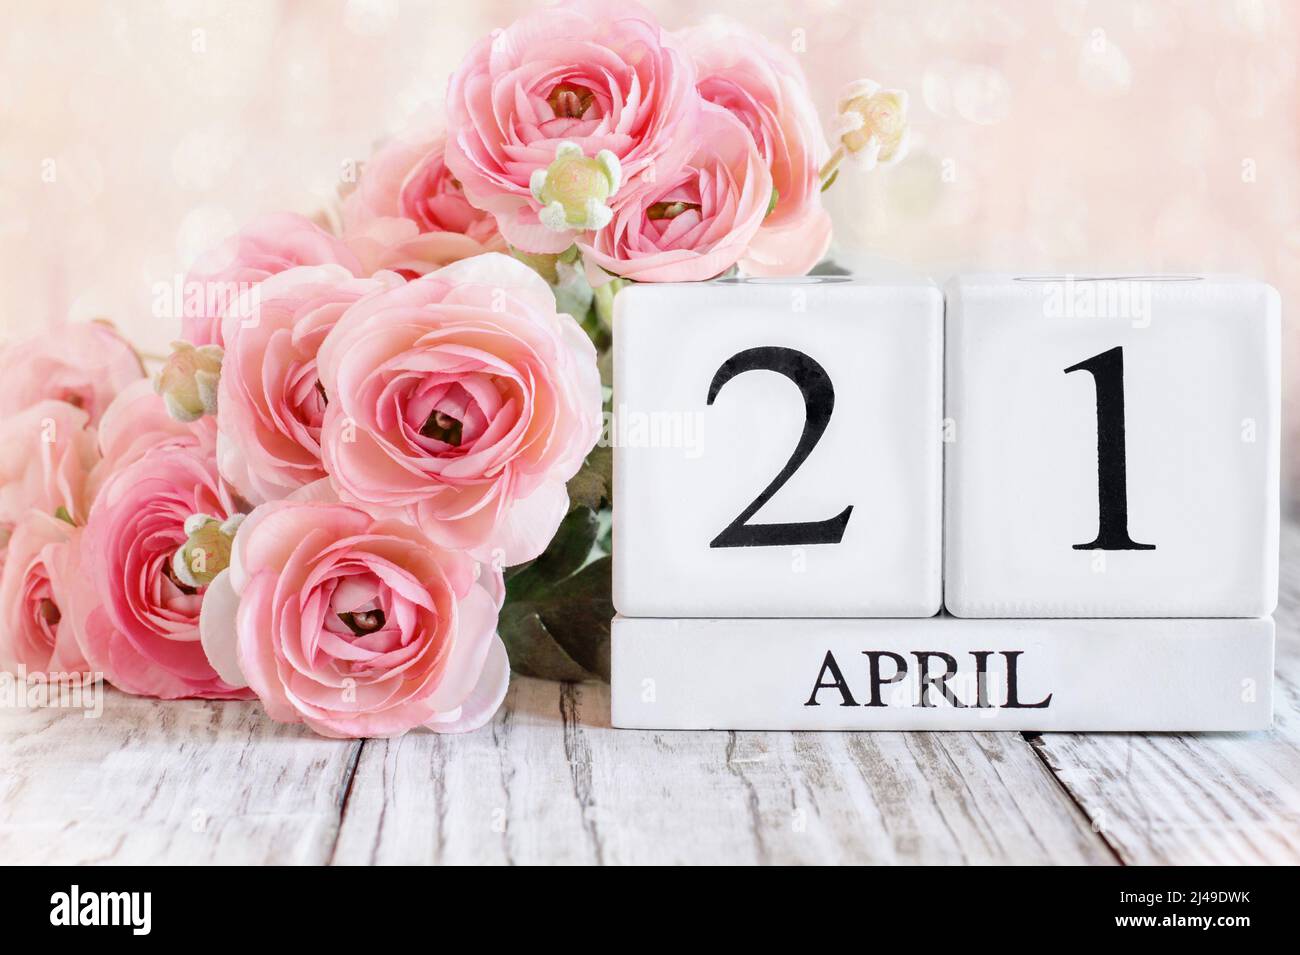 Blocs de calendrier en bois blanc avec la date avril 21st. Mise au point sélective avec arrière-plan flou. Banque D'Images